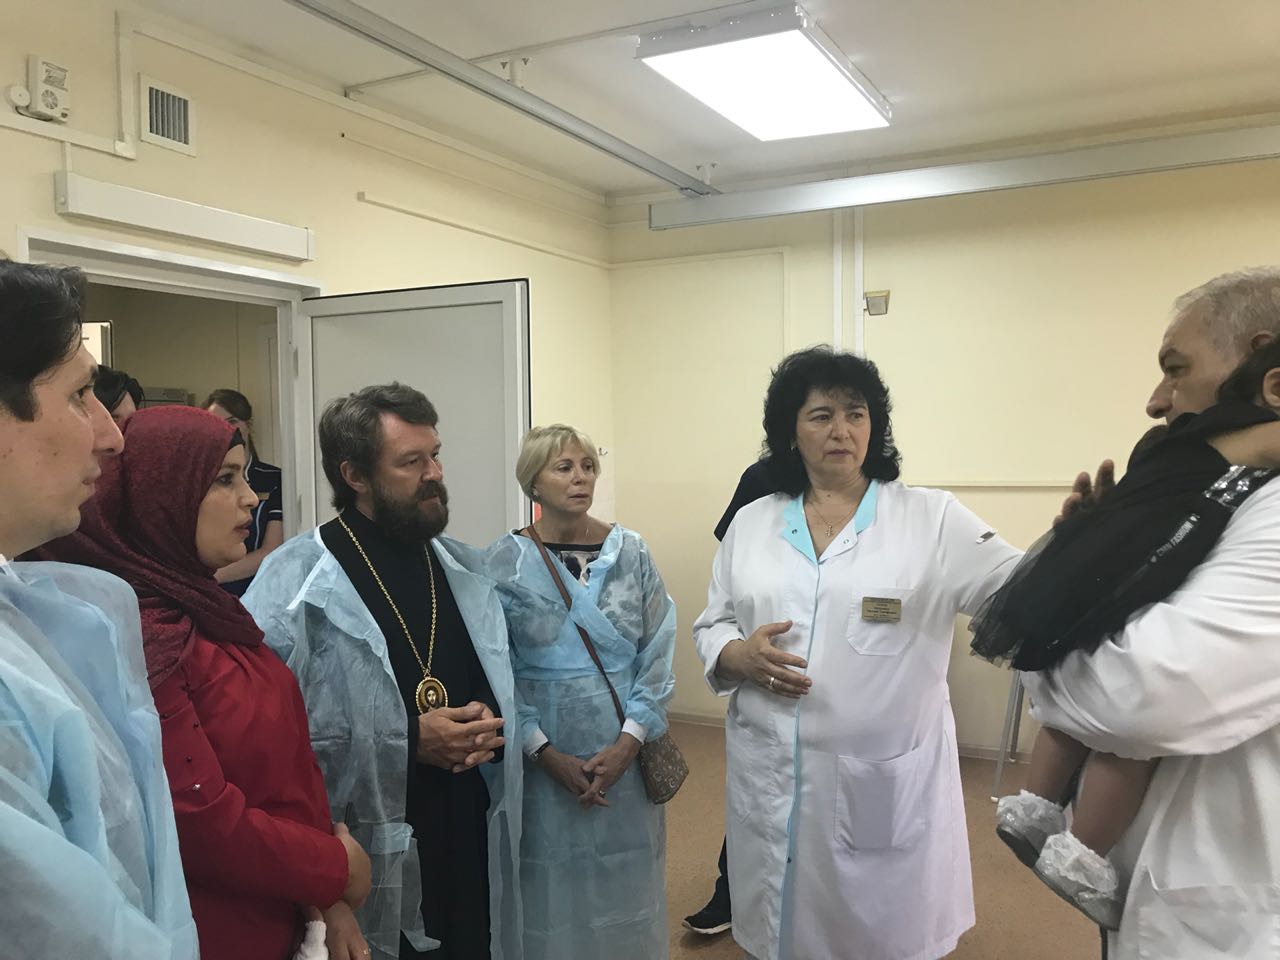 Митрополит Волоколамский Иларион посетил Научно-практический центр детской психоневрологии Департамента здравоохранения г. Москвы